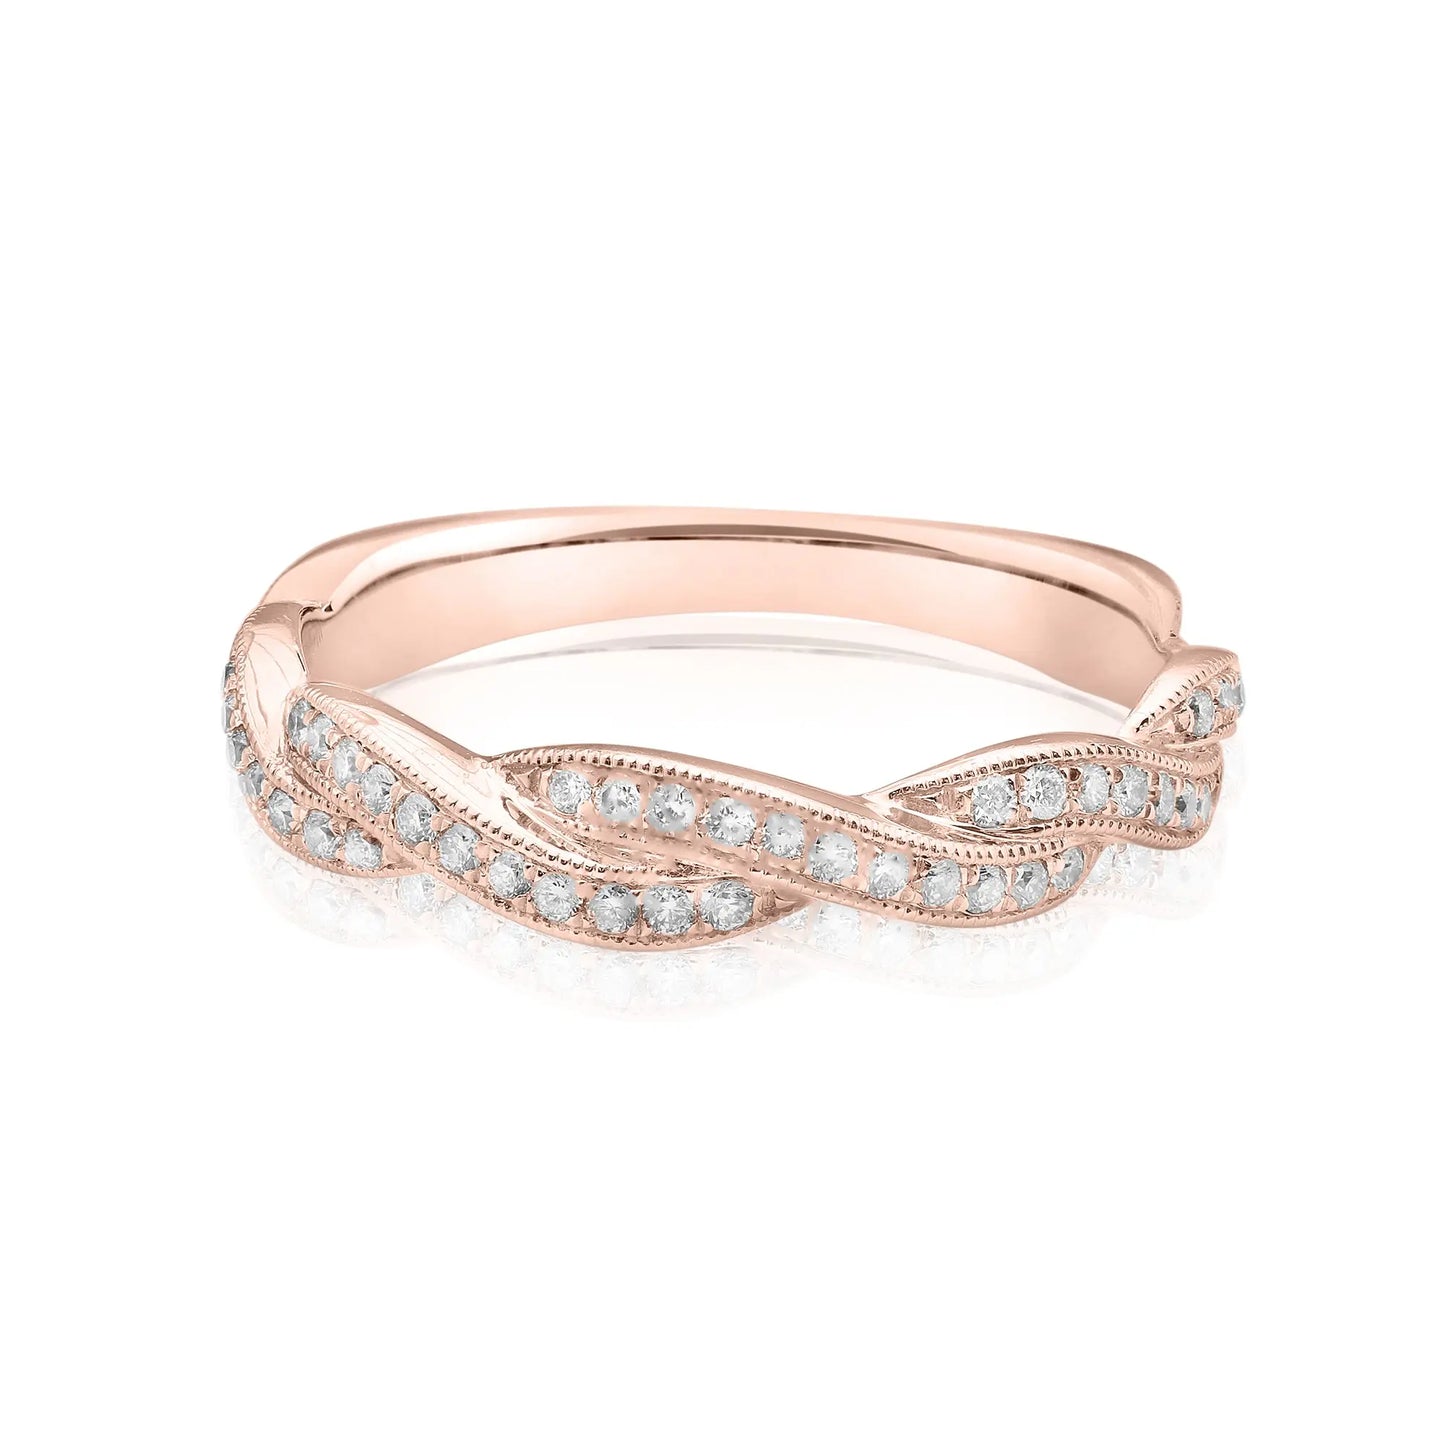 Vintage Braided Diamond Ring dansonjewelers